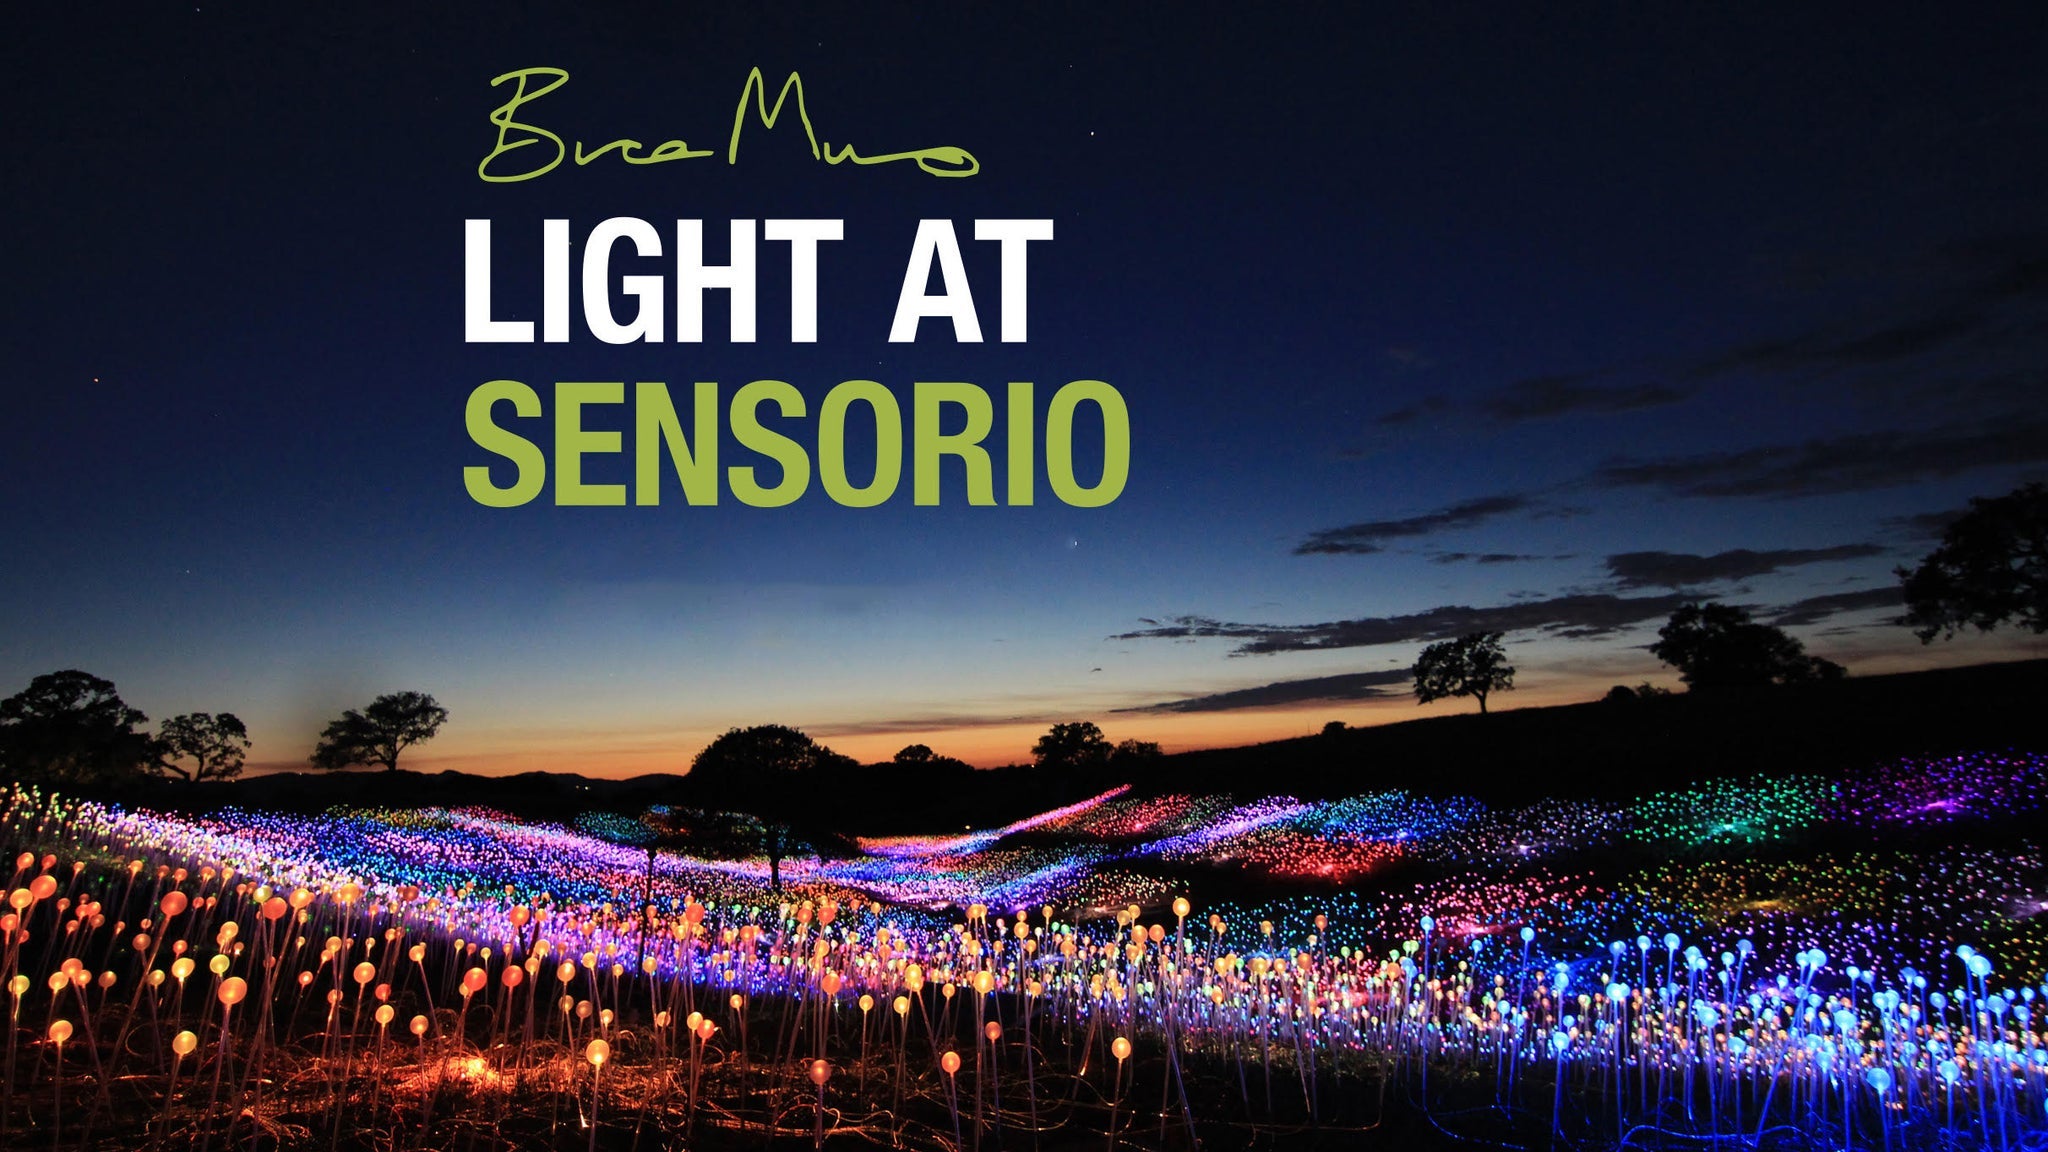 Bruce Munro: Light at Sensorio at Sensorio - Paso Robles, CA 93446